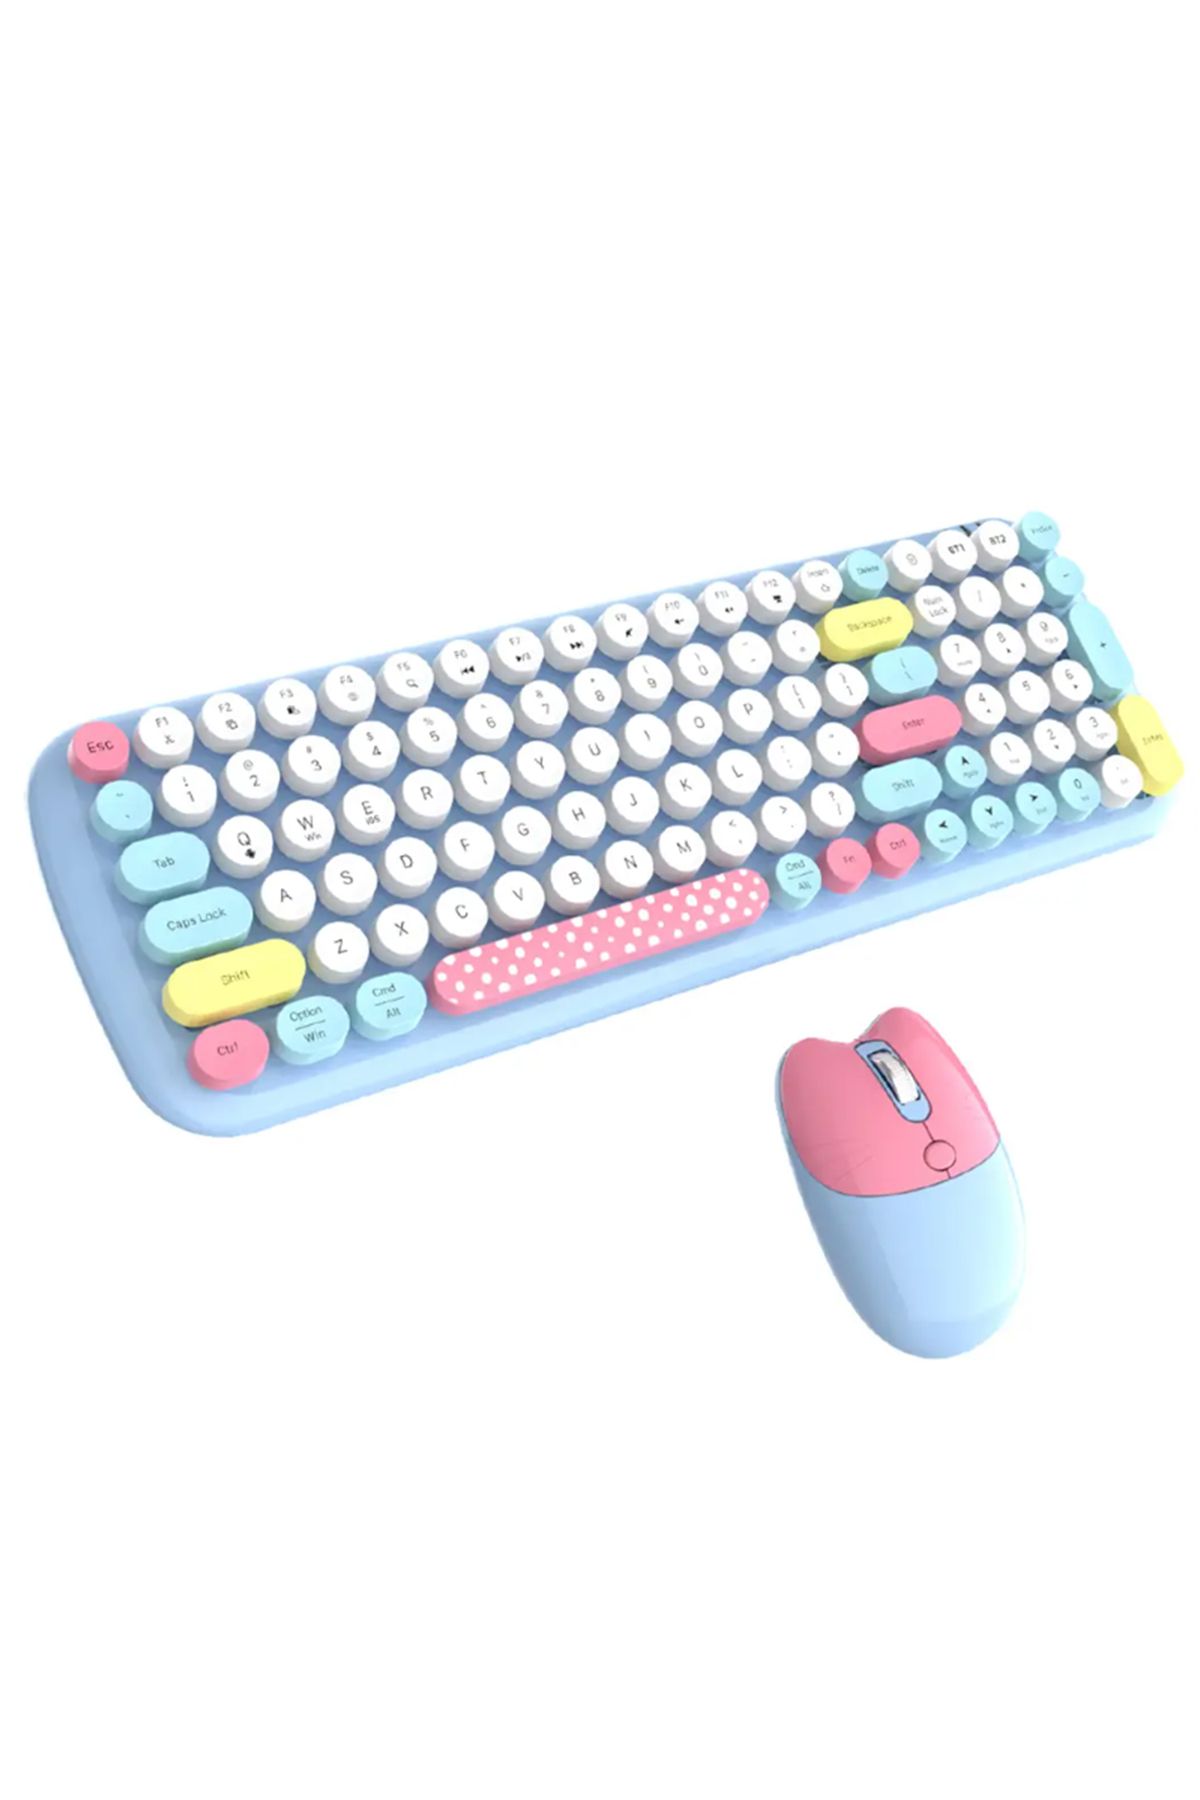 Microcase Geezer Kablosuz Bluetooth Bağlantılı Yuvarlak Renkli Tuşlu Klavye Ve Mouse Set-al4187